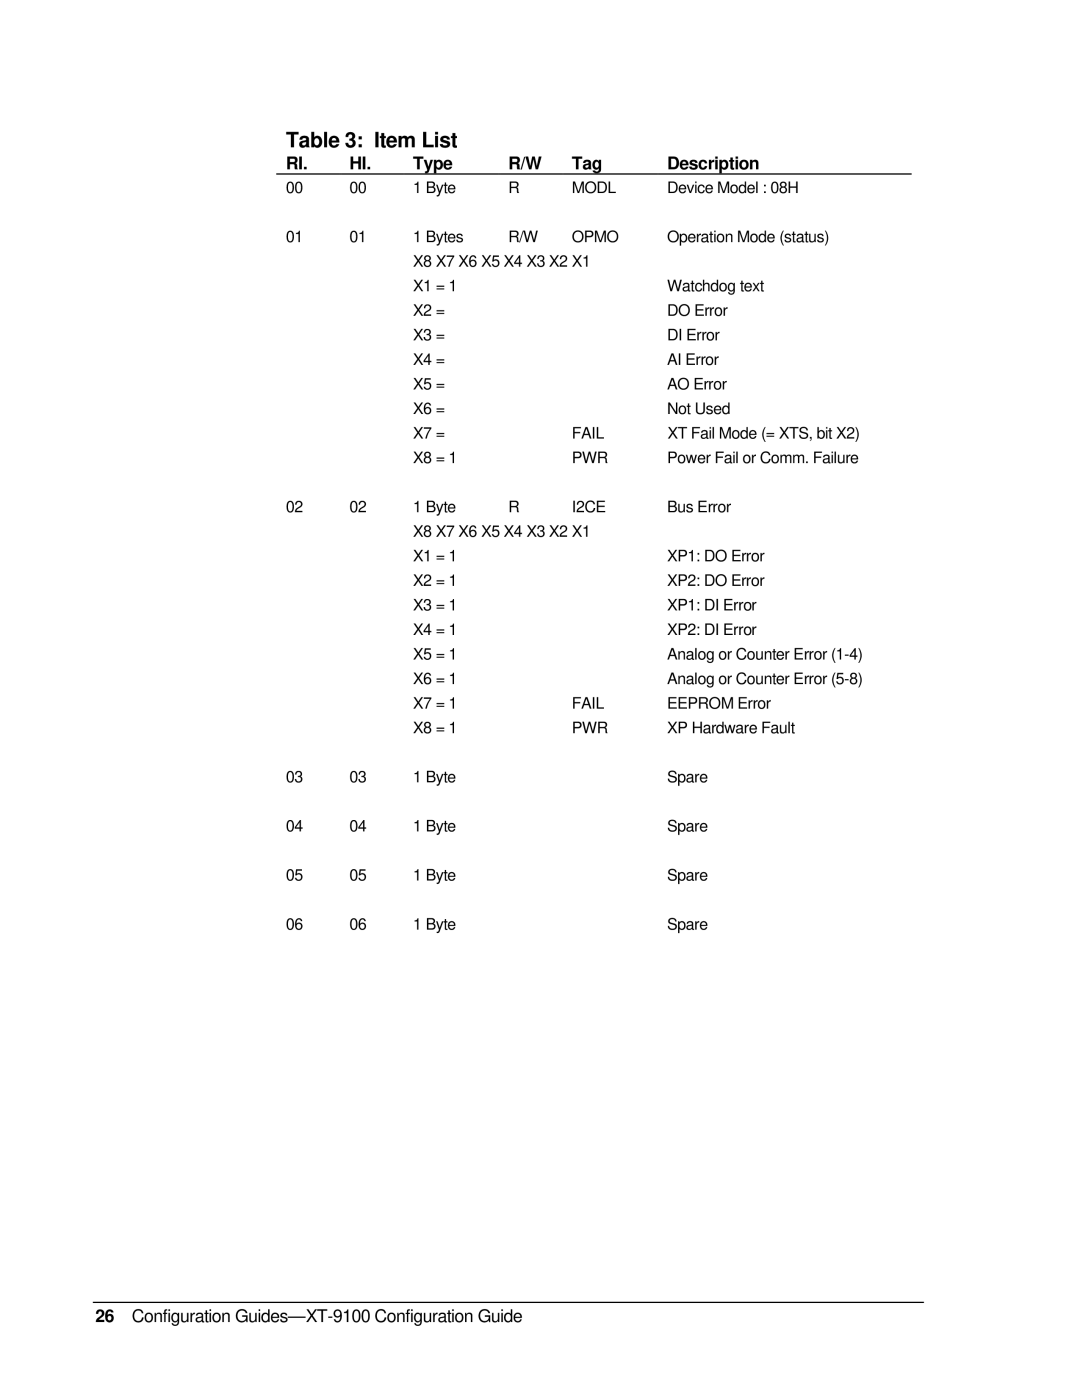 Johnson Controls XP-910x appendix Item List, Type, Description, Configuration Guides-XT-9100 Configuration Guide 